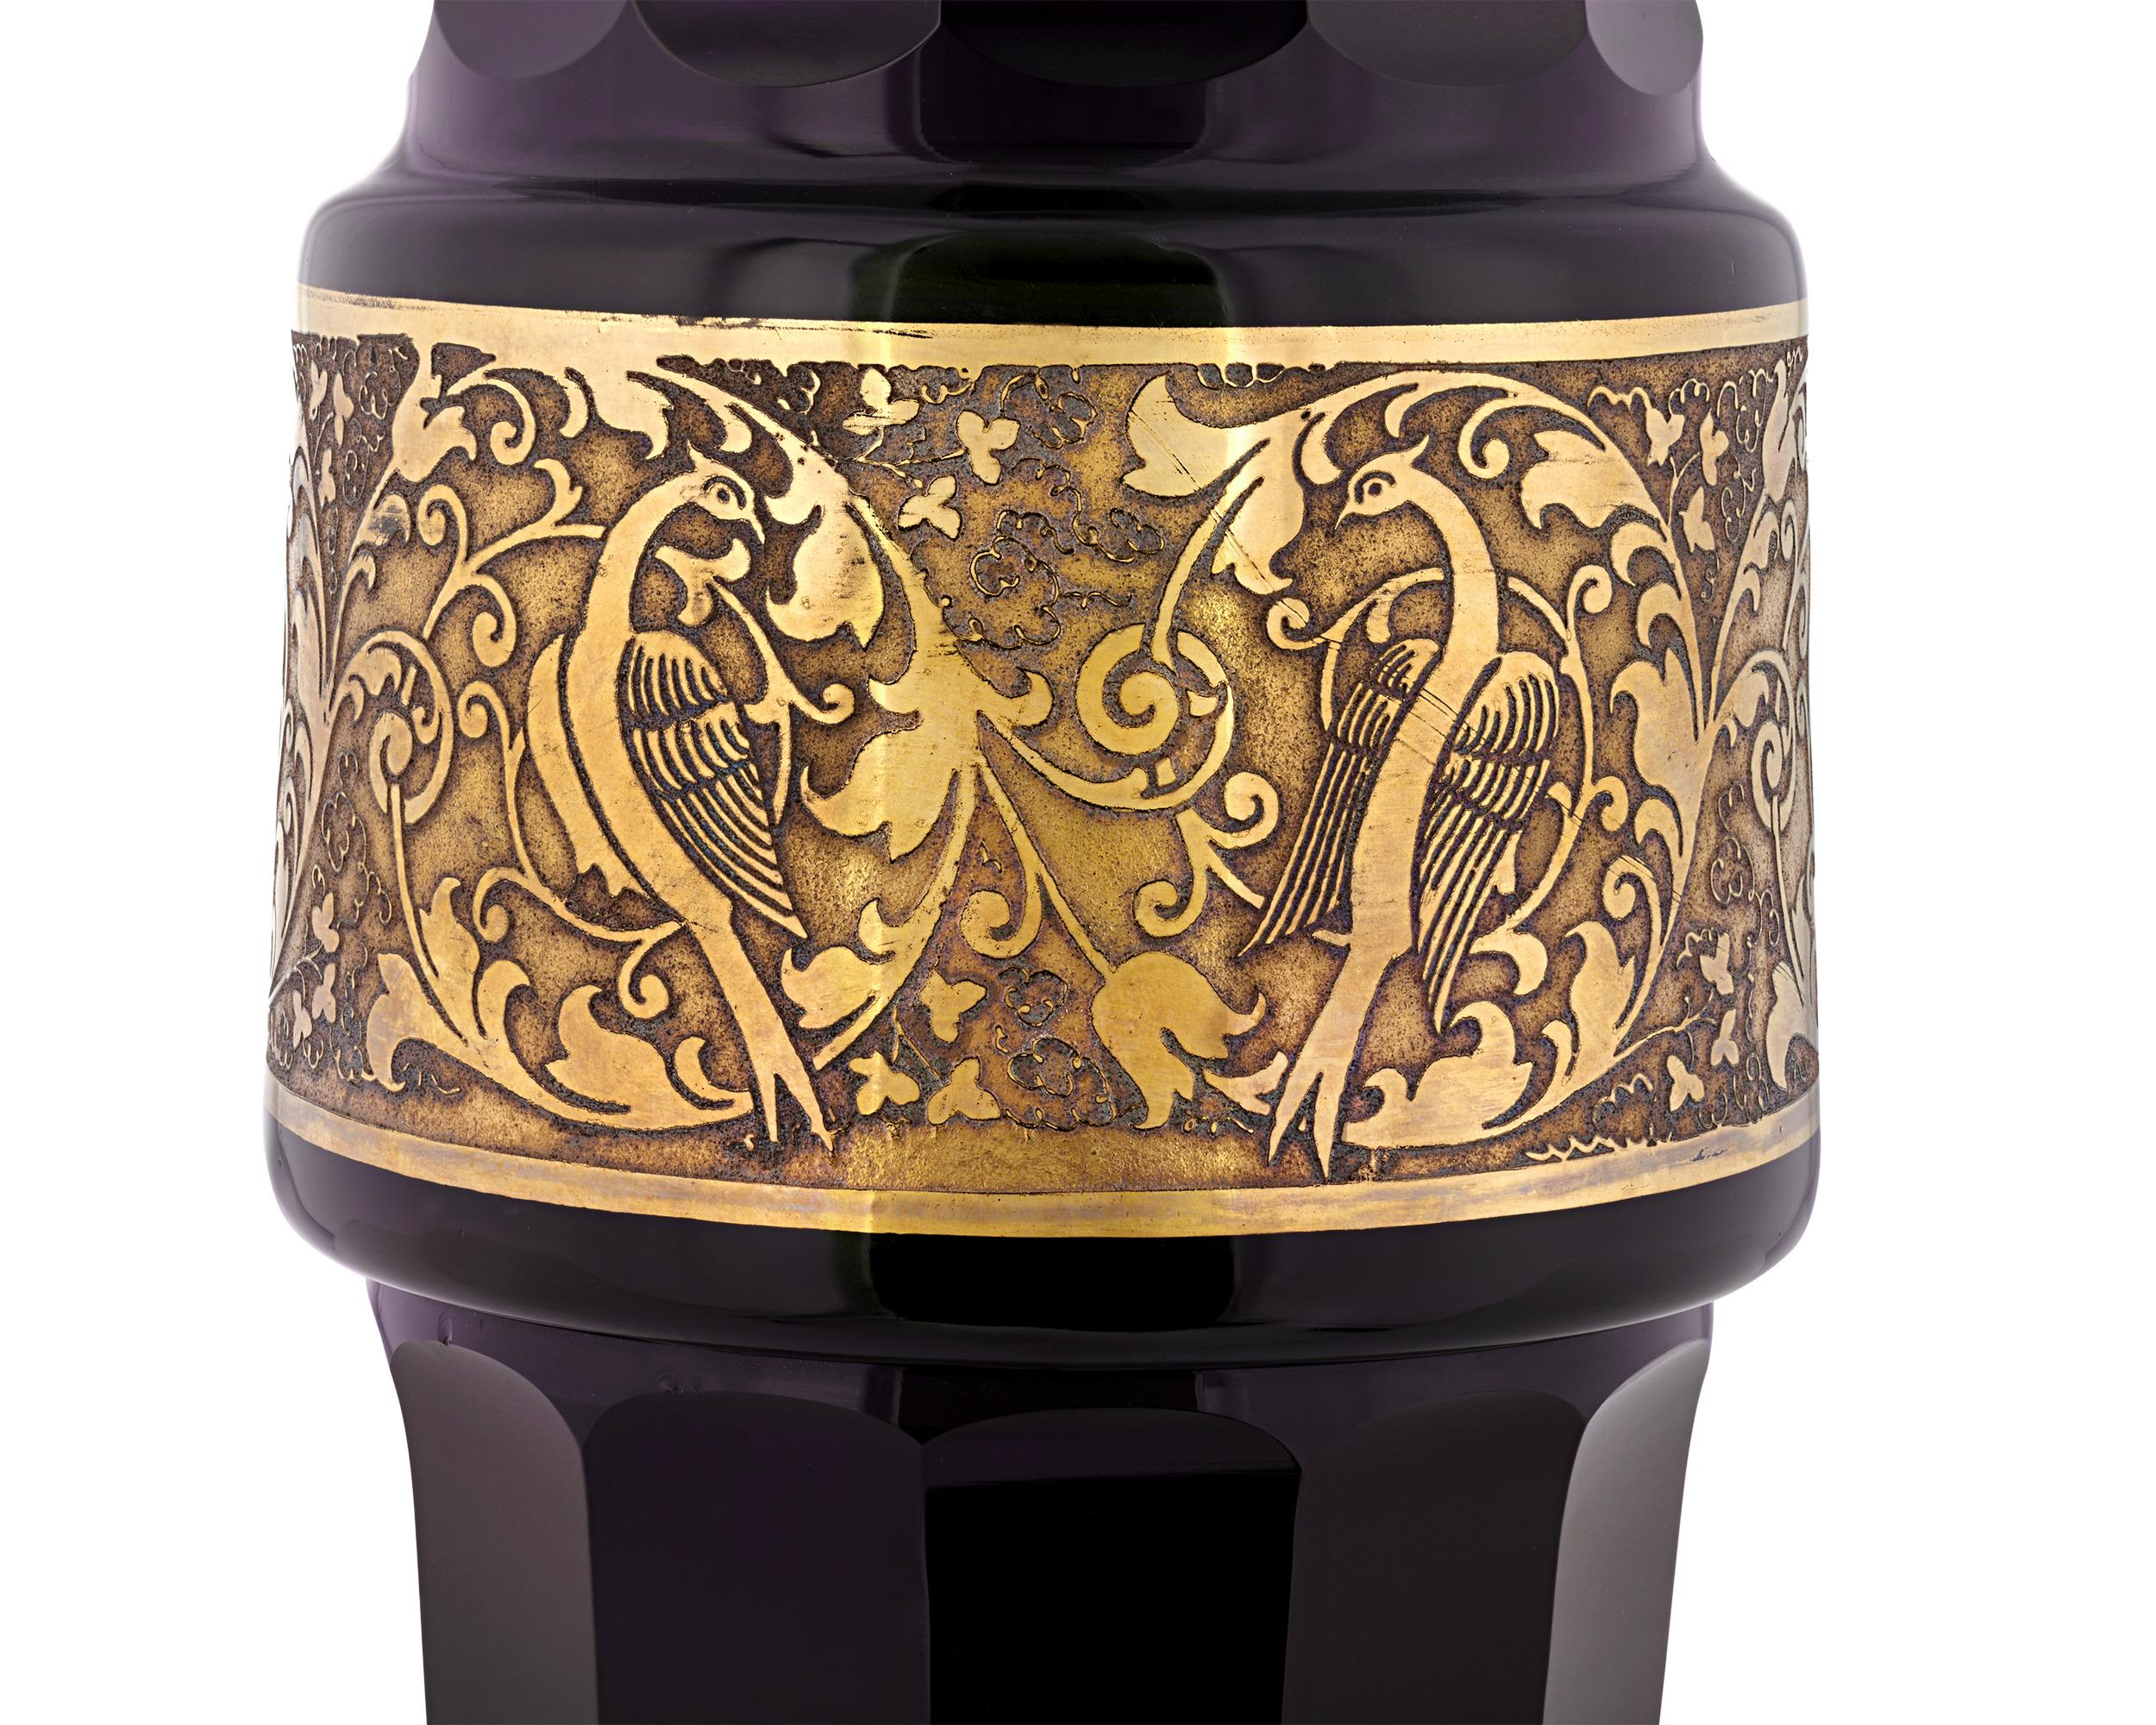 Dieses bezaubernde Vasenpaar von Moser ist ein Beispiel für die Schönheit des böhmischen Kunstglases. Mit einer Höhe von über einem Meter und einem seltenen, tiefen Amethyst-Farbton ist die Glasarbeit mit einem aufwändig vergoldeten Band versehen